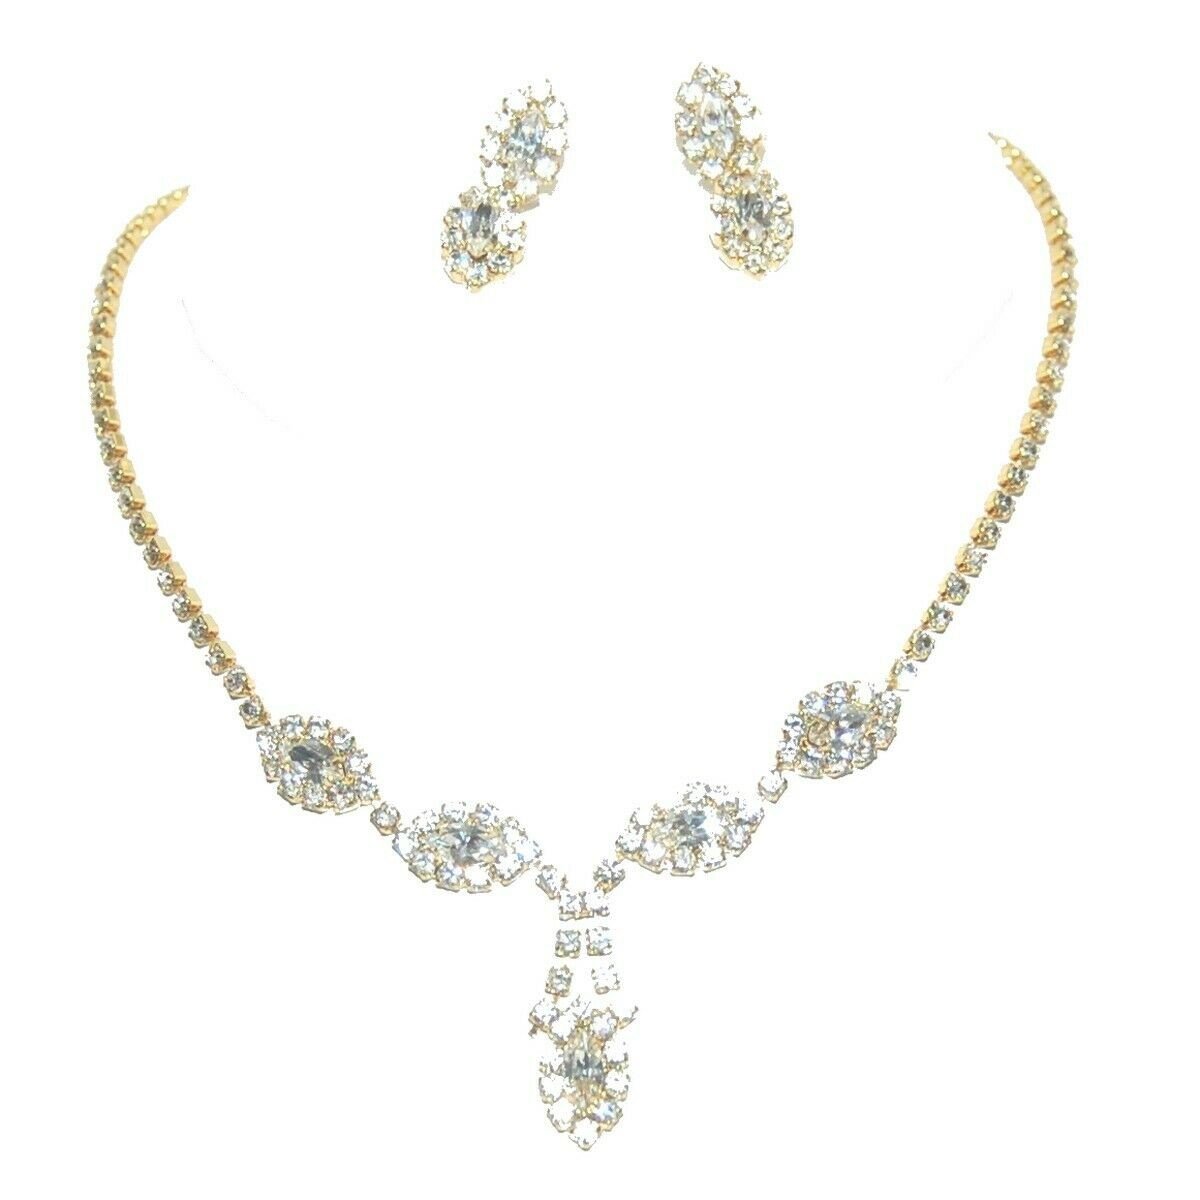 Parure bijoux pour mariée boucles doreilles et collier - Cristal clair